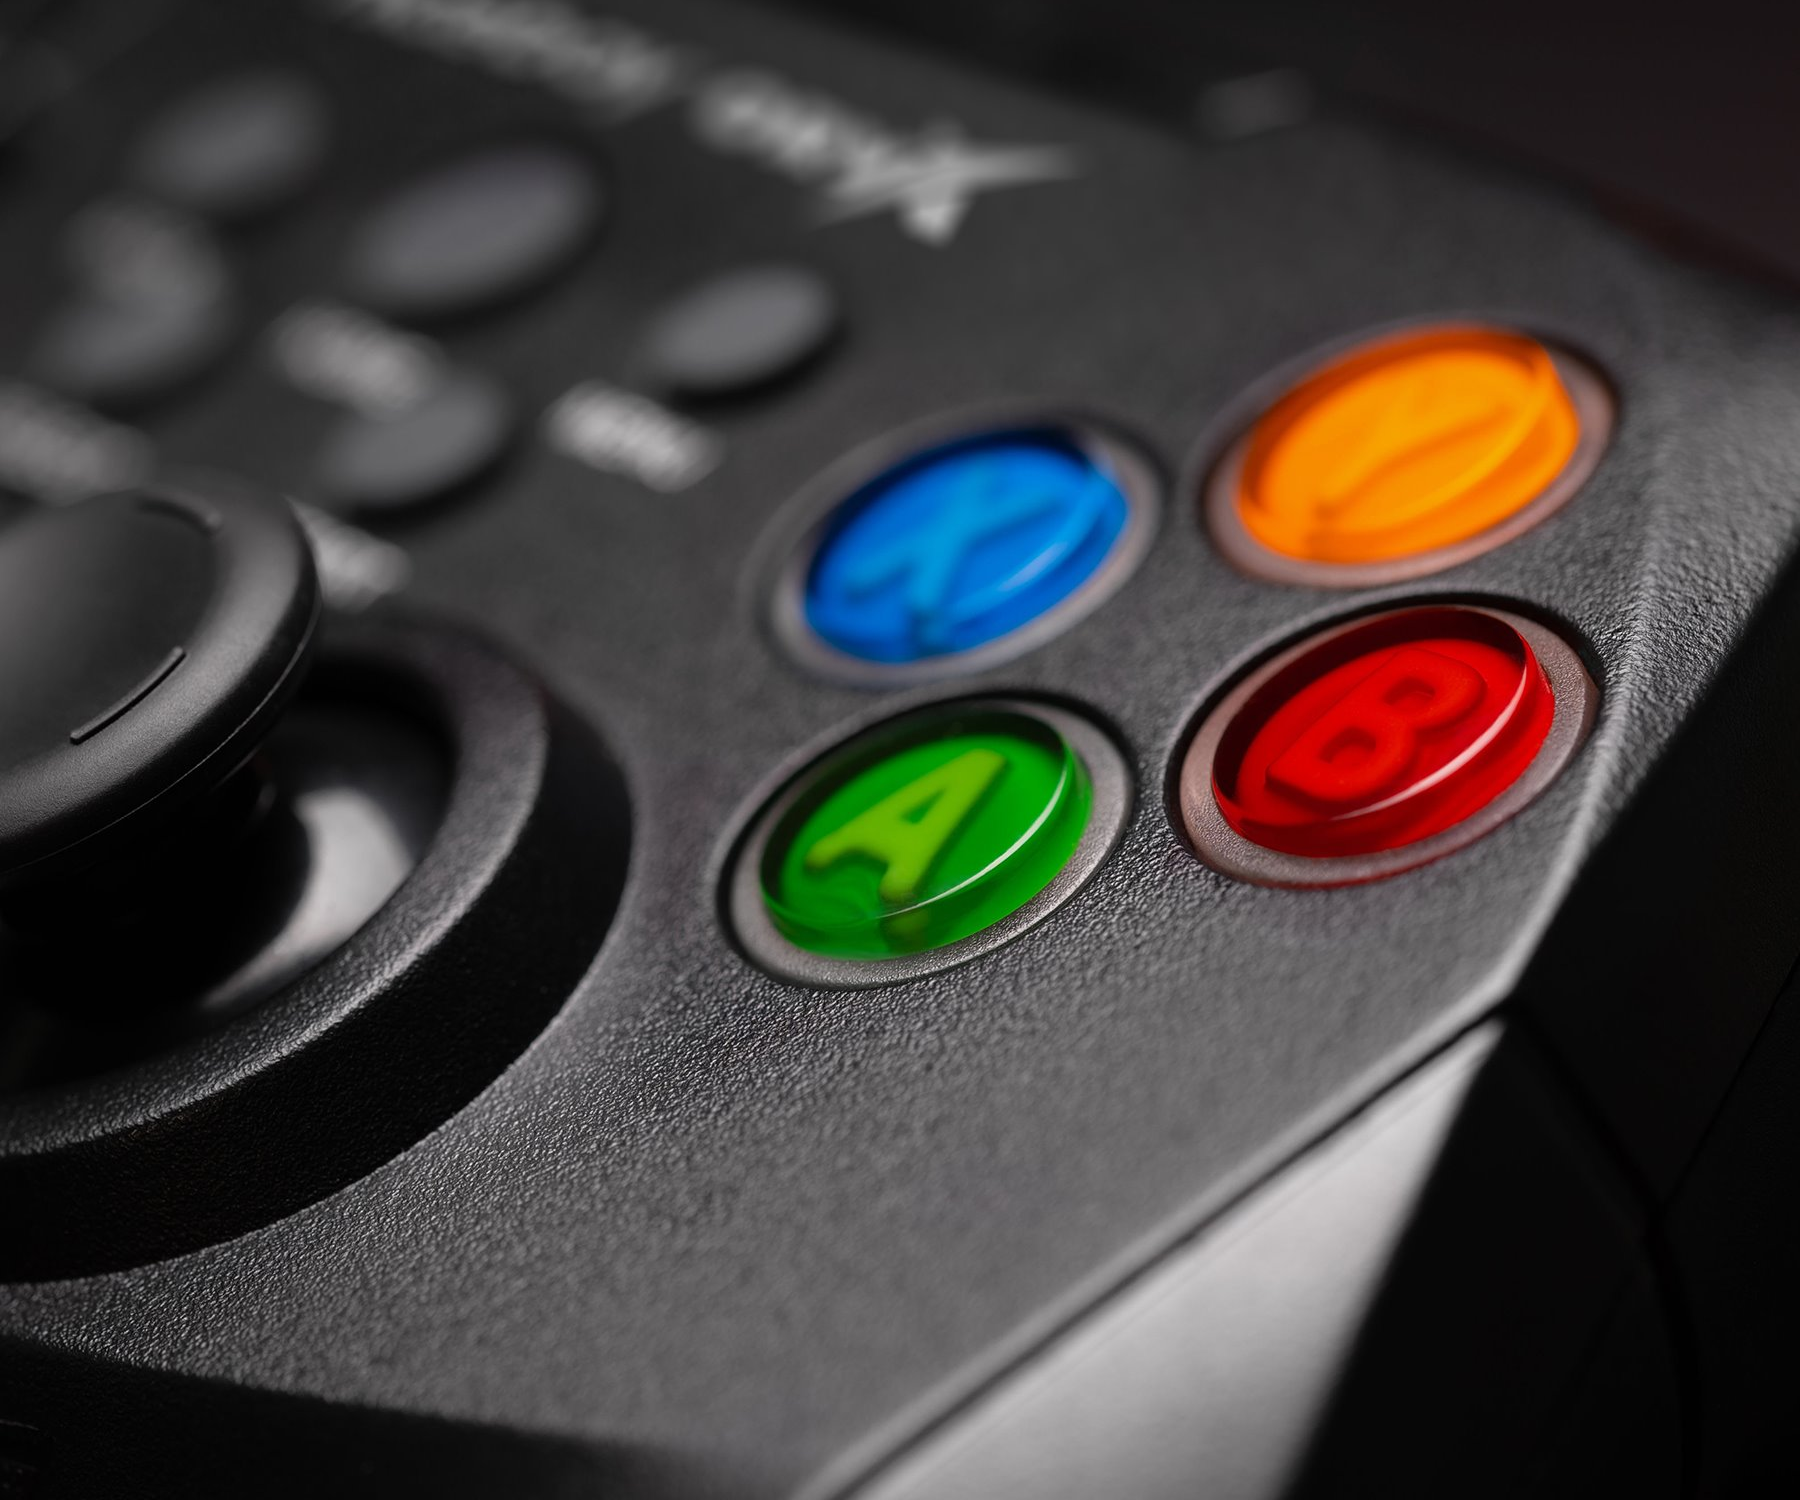 ORYX GamePad má celkem 17 tlačítek ve známém rozložení, včetně klasických tlačítek A, B, X a Y, analogových triggerů, 2 joysticků, 8cestného křížového D-padu a dalších.